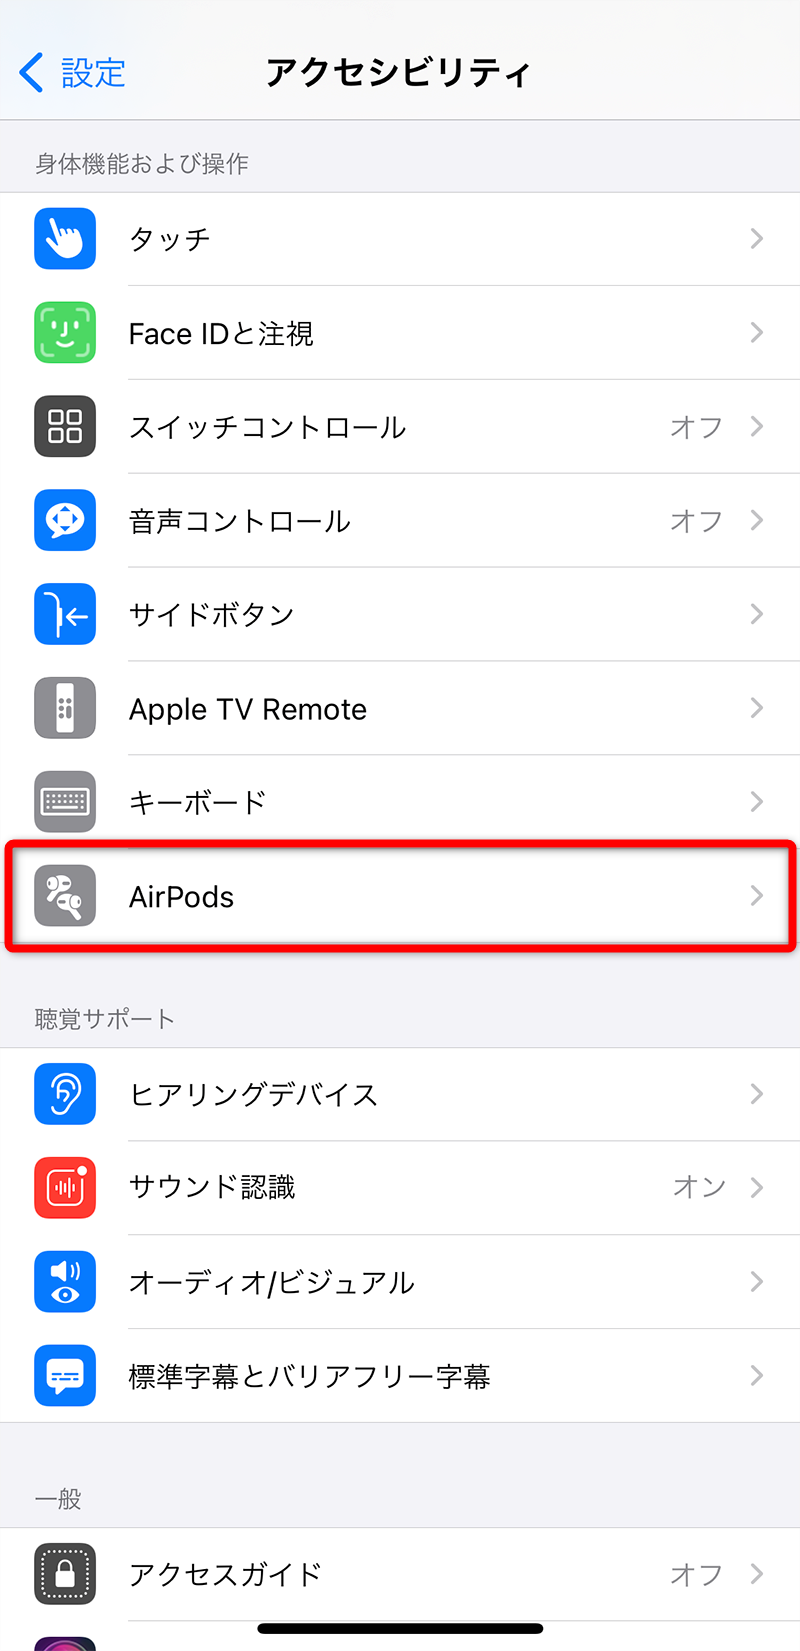 AirPods（エアーポッズ）の使い方。iPhoneとの接続や設定、カスタマイズ方法まで解説